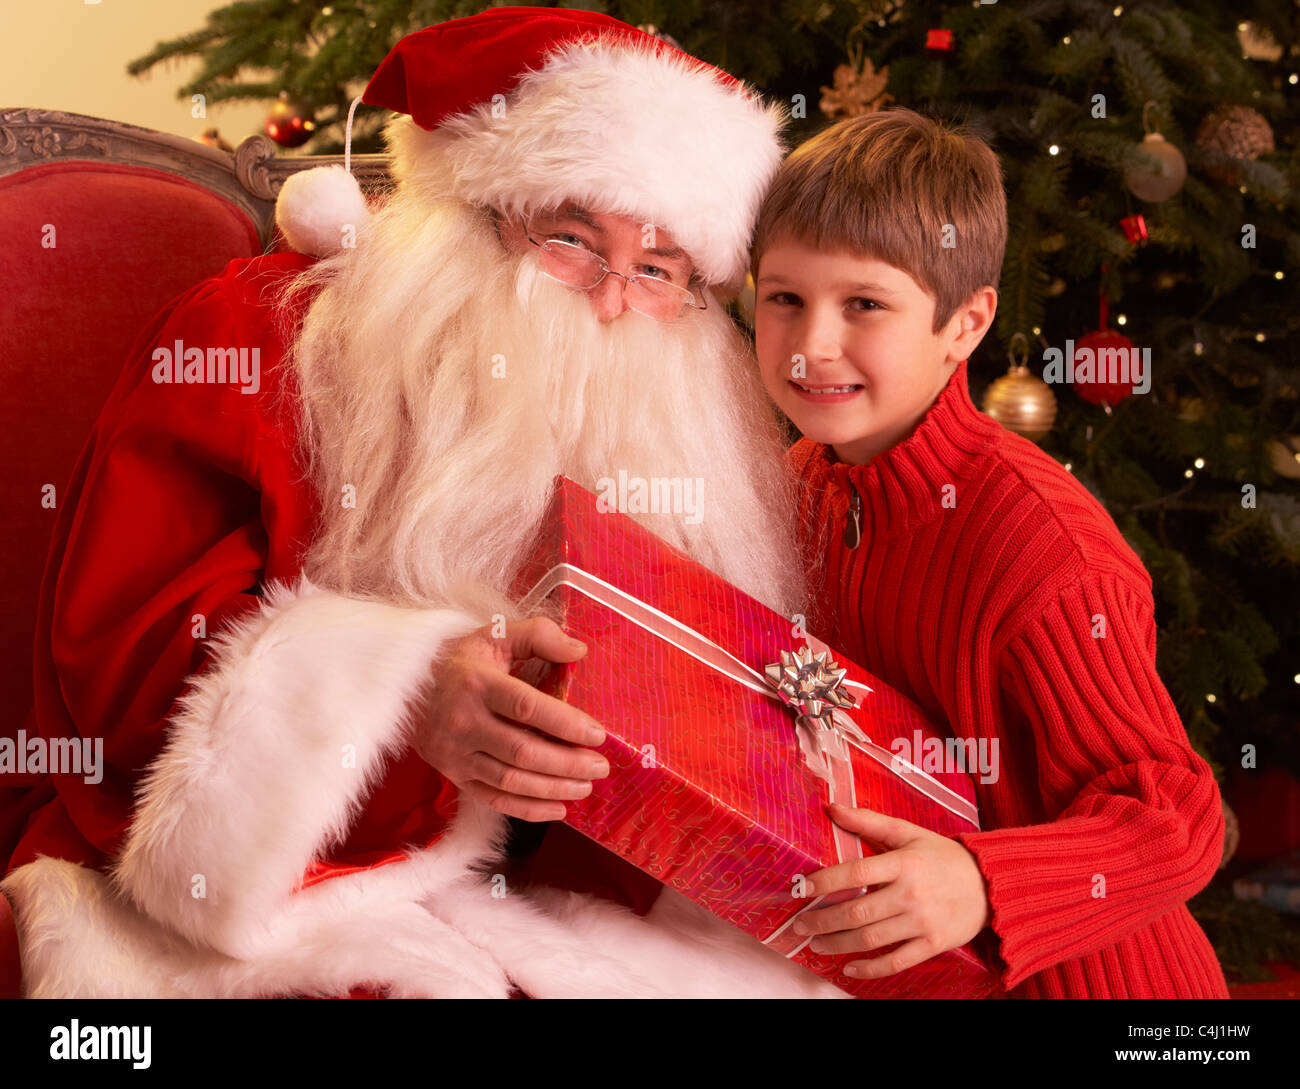 Babbo Natale dando regalo al ragazzo nella parte anteriore dell albero di Natale Foto Stock